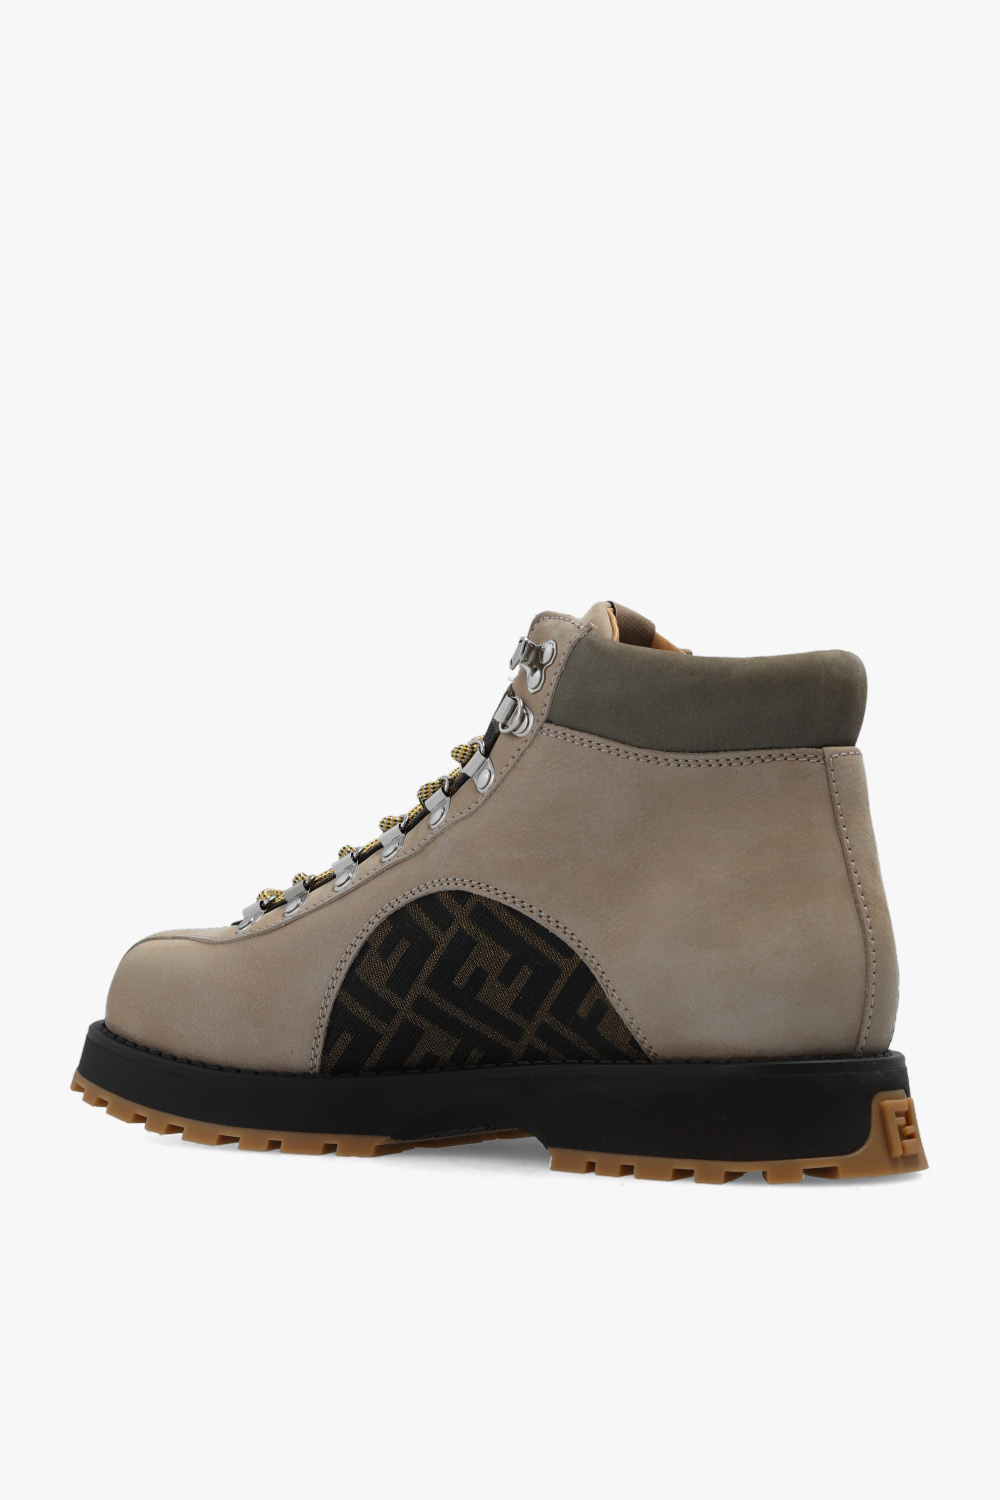 Louis Vuitton, Shoes, Louis Vuitton Flat Valley Boot Black Size 38 It